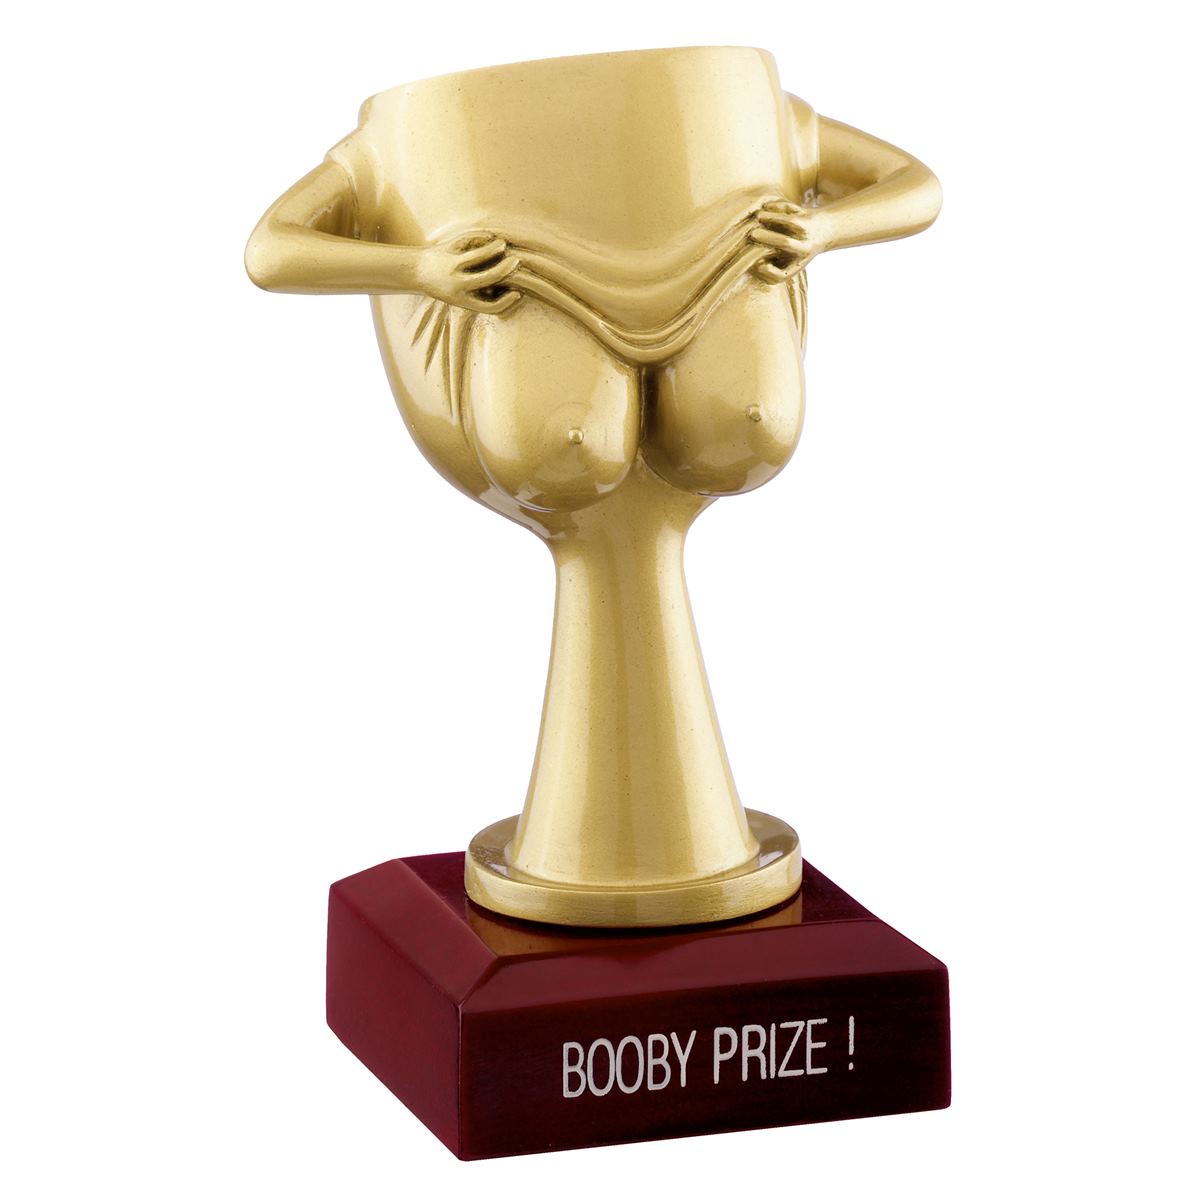 Booby Prize Trophy Novelty Award